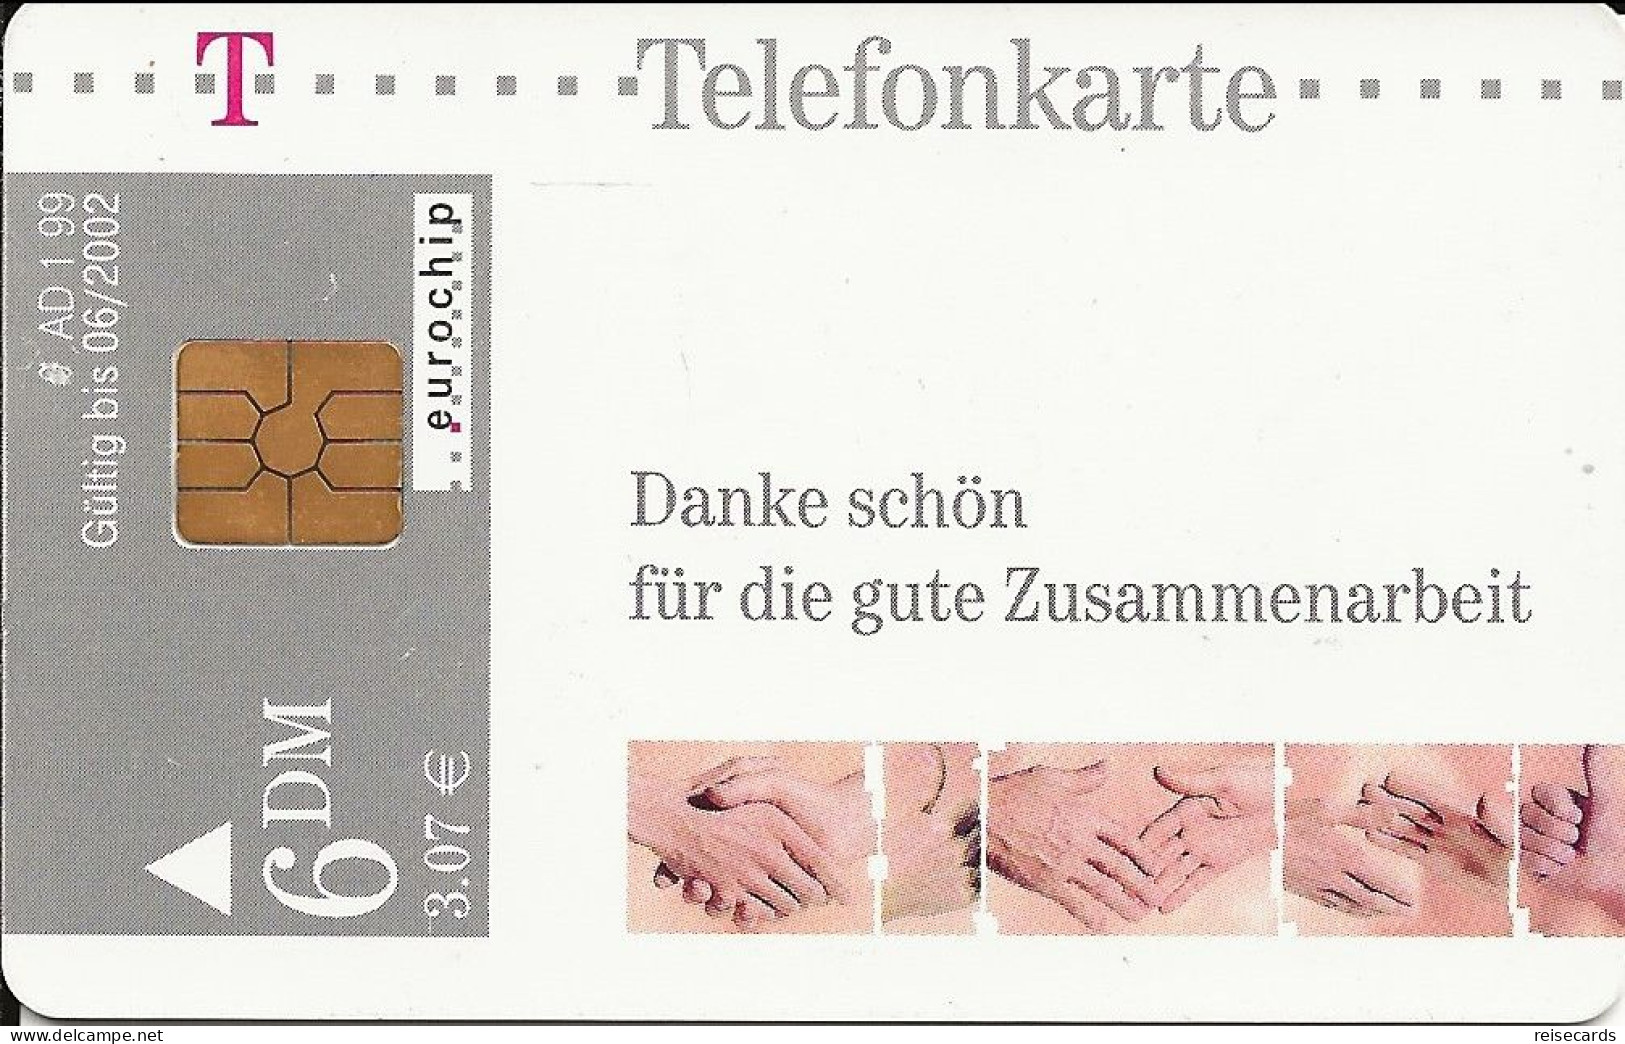 Germany: Telekom AD 1 99 Danke Schön Für Die Gute Zusammenarbeit - A + AD-Series : Publicitarias De Telekom AG Alemania